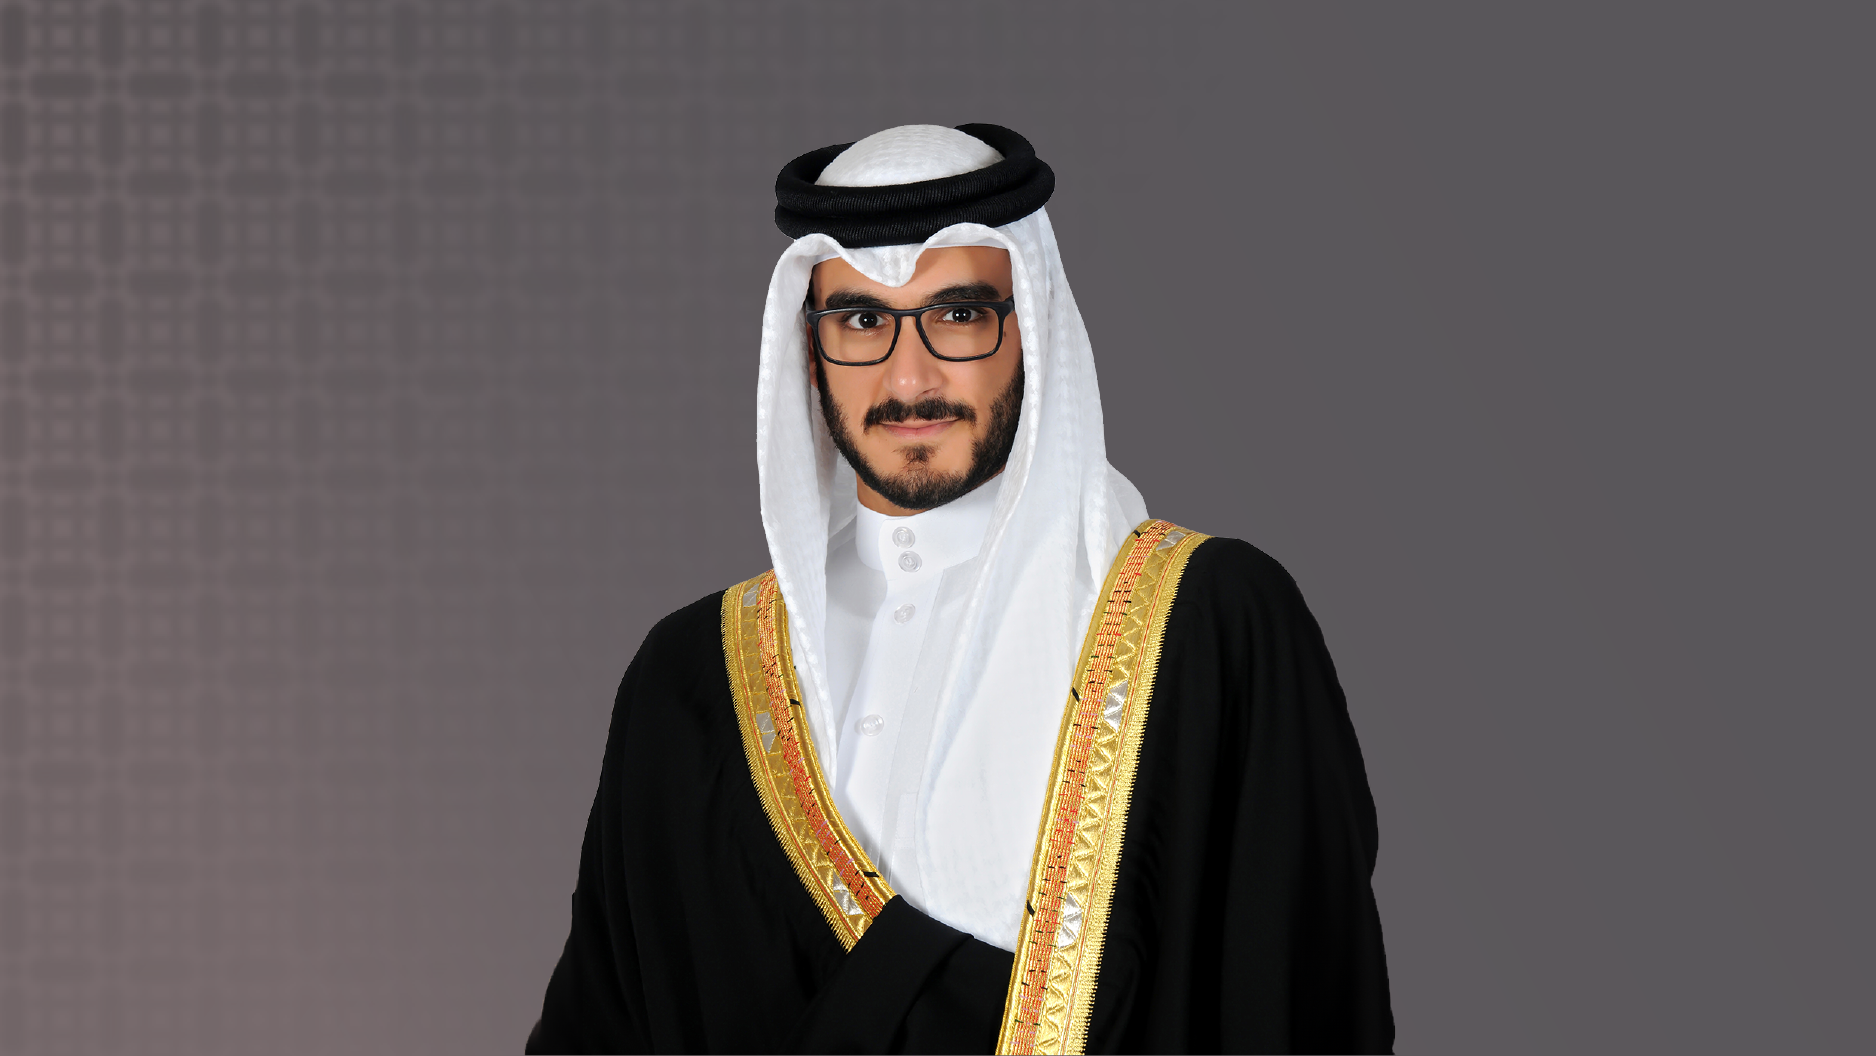 سمو الشيخ عيسى بن سلمان بن حمد: التعليم نواة أساسية في صقل مهارات وكفاءات جيل المستقبل من أبناء البحرين